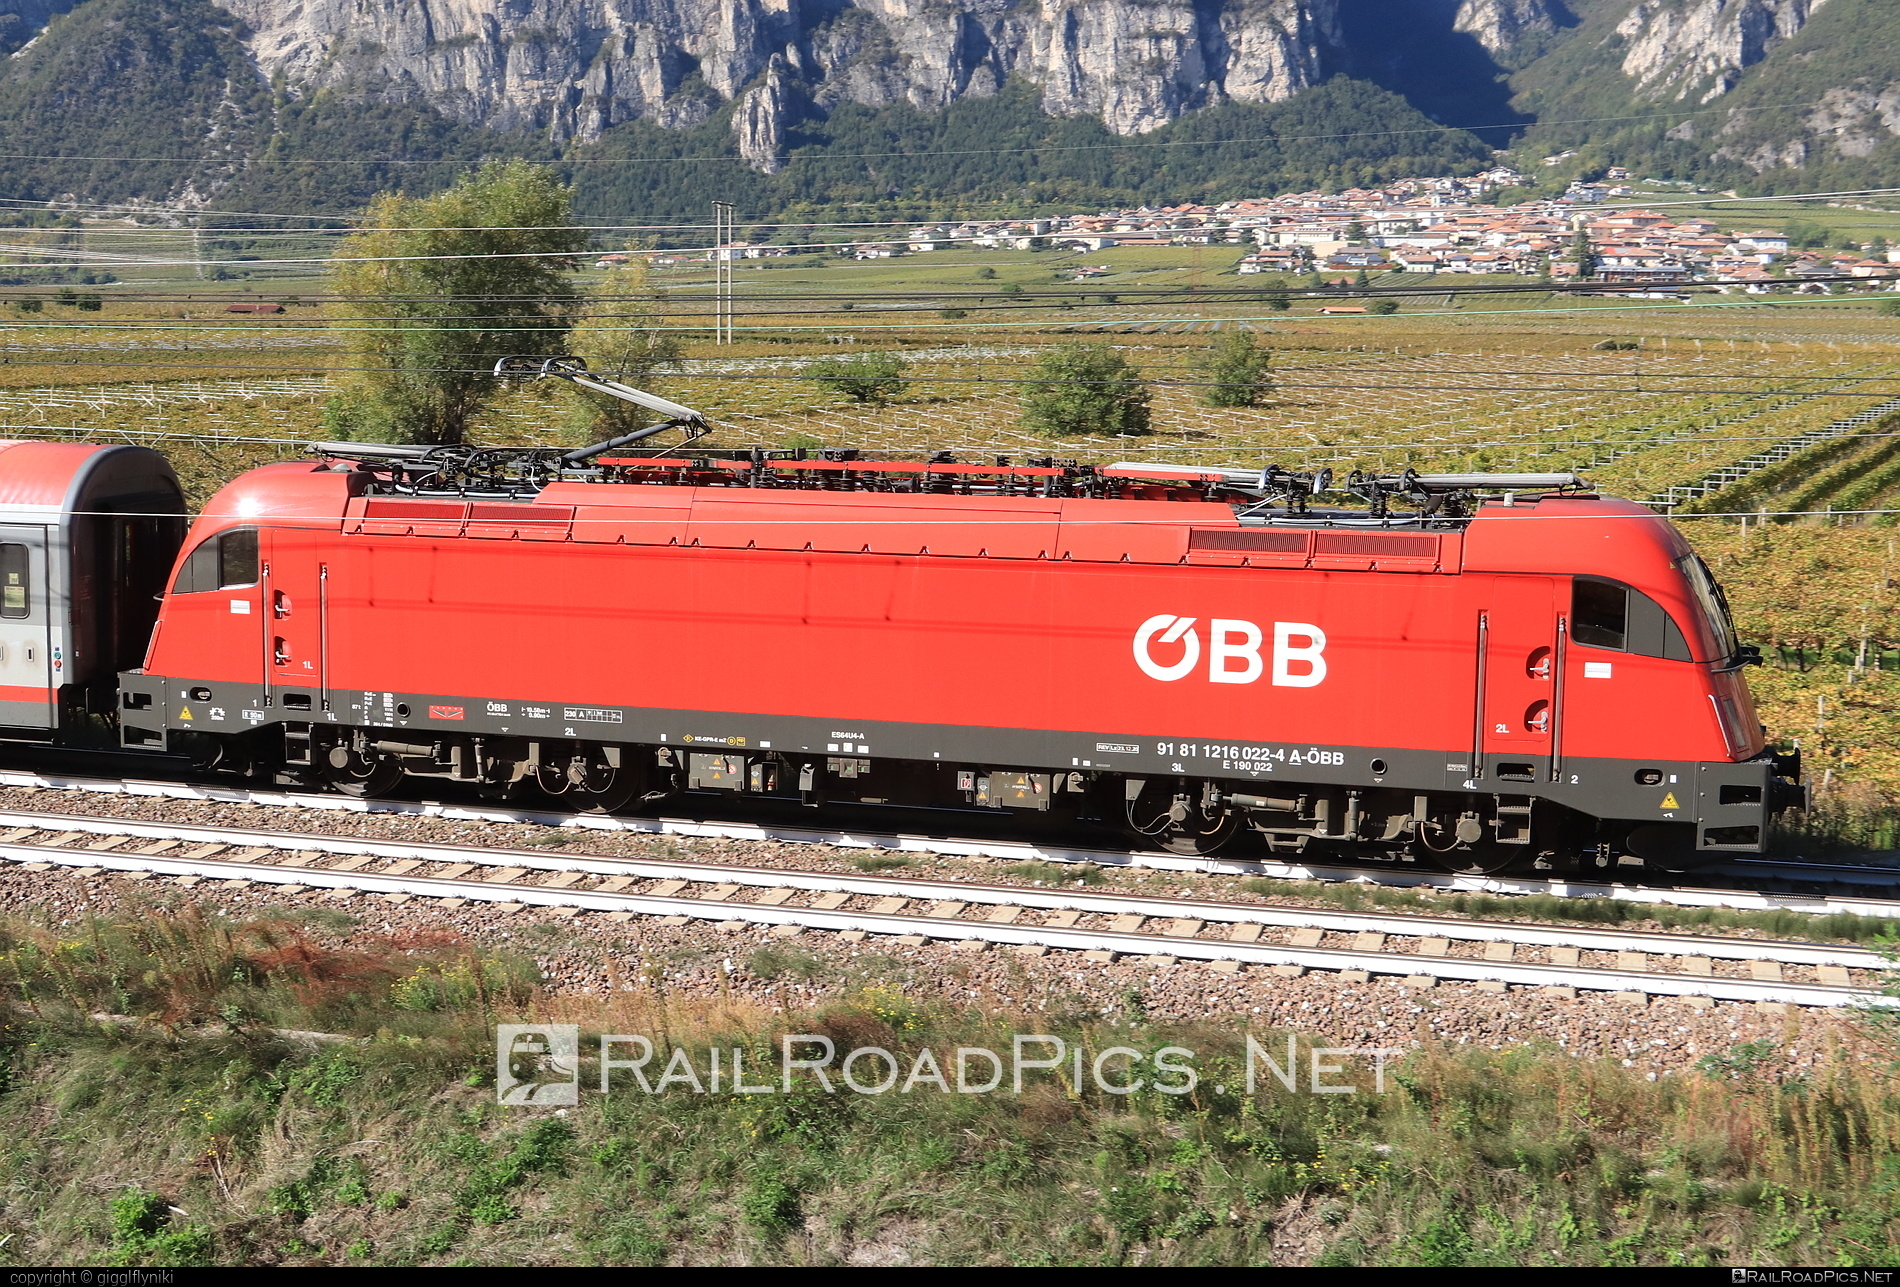 Siemens ES 64 U4 - 1216 022 operated by Österreichische Bundesbahnen #es64 #es64u4 #eurosprinter #obb #osterreichischebundesbahnen #siemens #siemensEs64 #siemensEs64u4 #siemenstaurus #taurus #tauruslocomotive